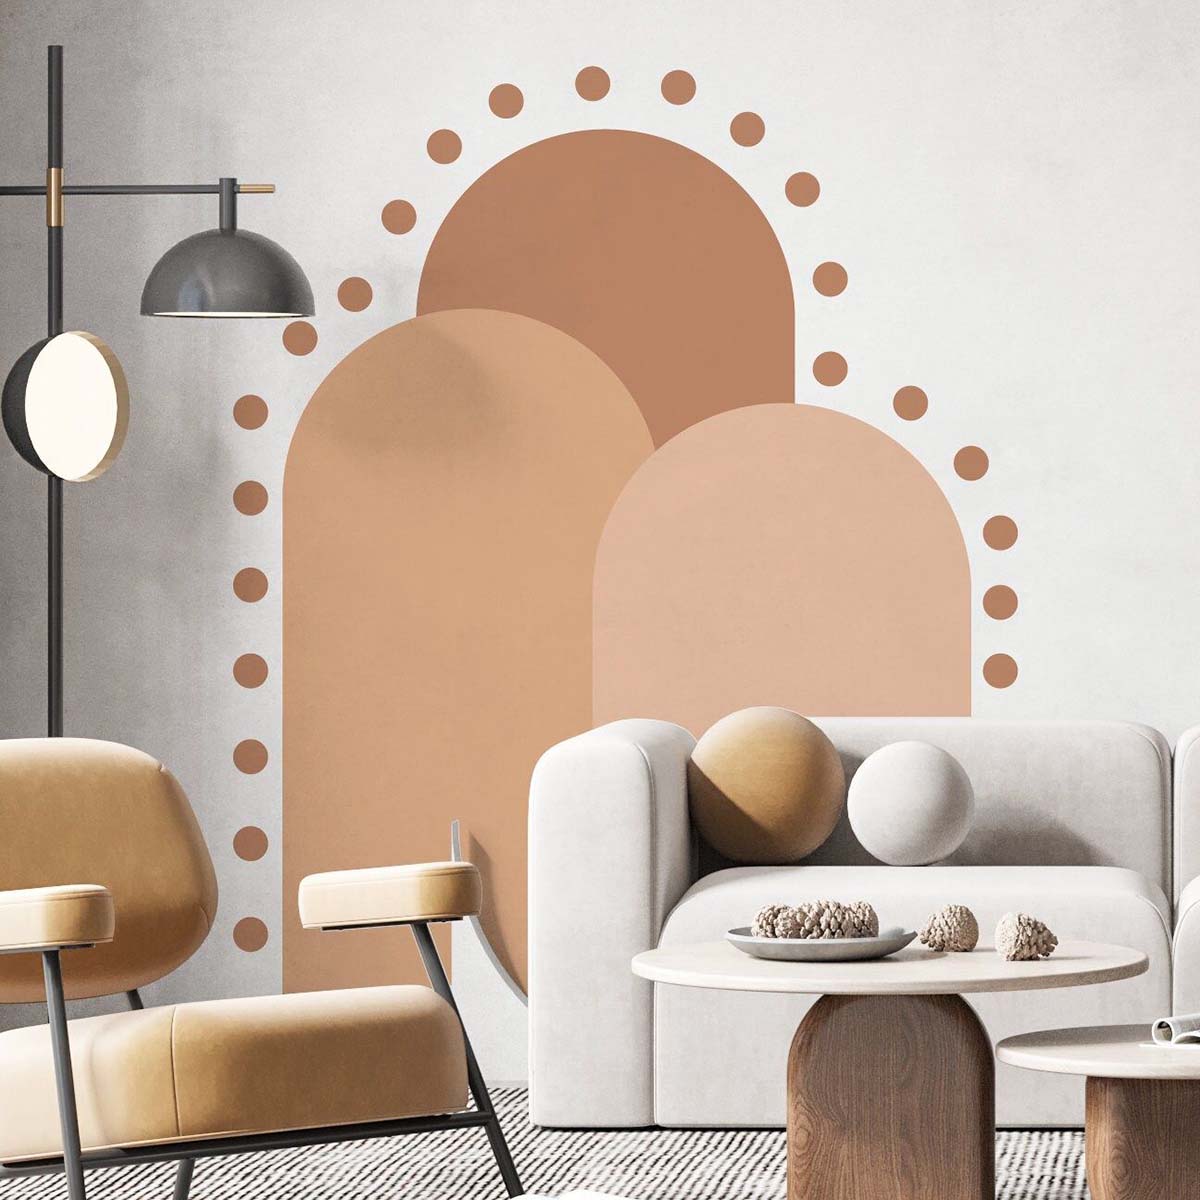 Thiết kế phòng khách theo phong cách Color Block. Nguồn: Pinterest